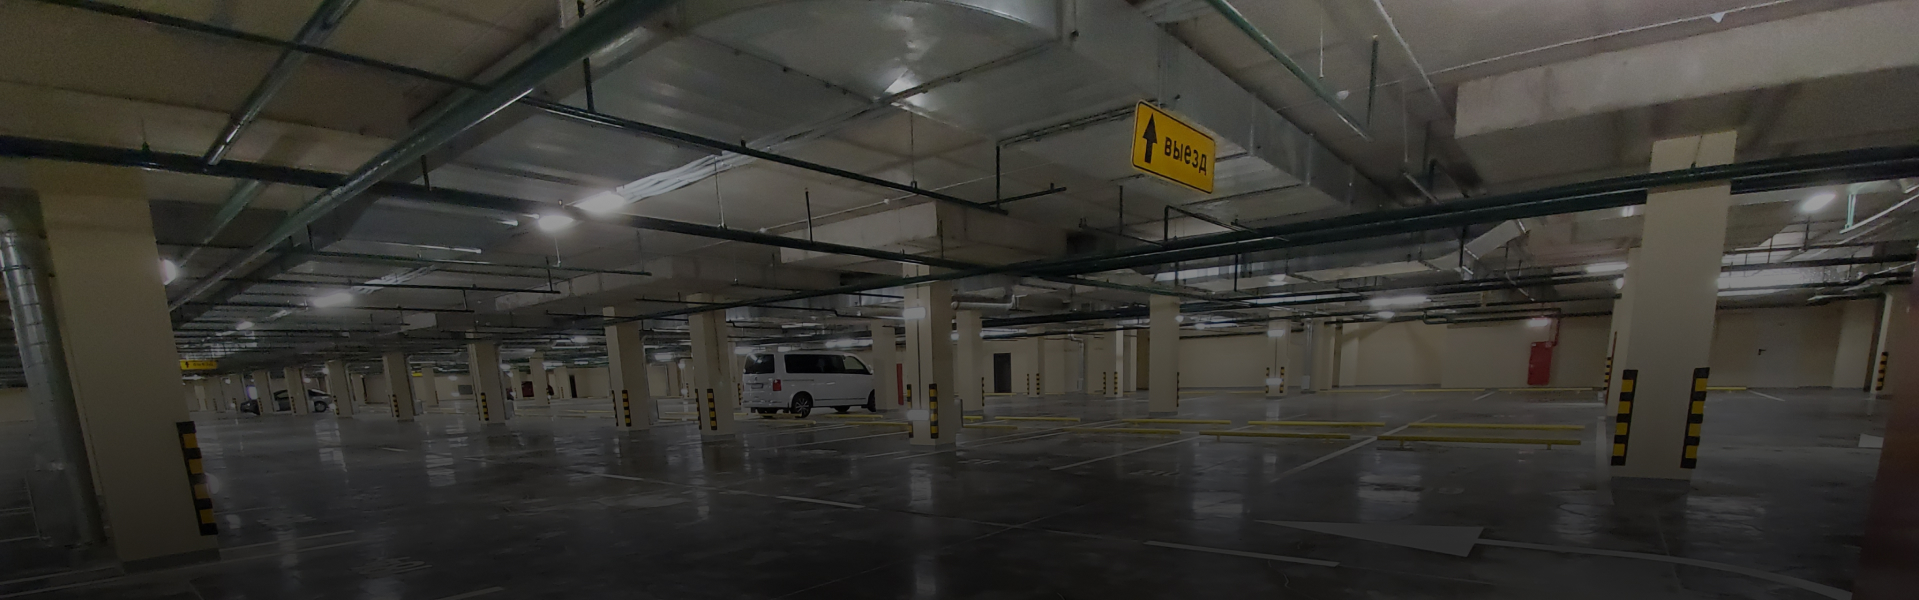 «Балтийская жемчужина» предлагает места в подземном паркинге, оборудованные системами хранения